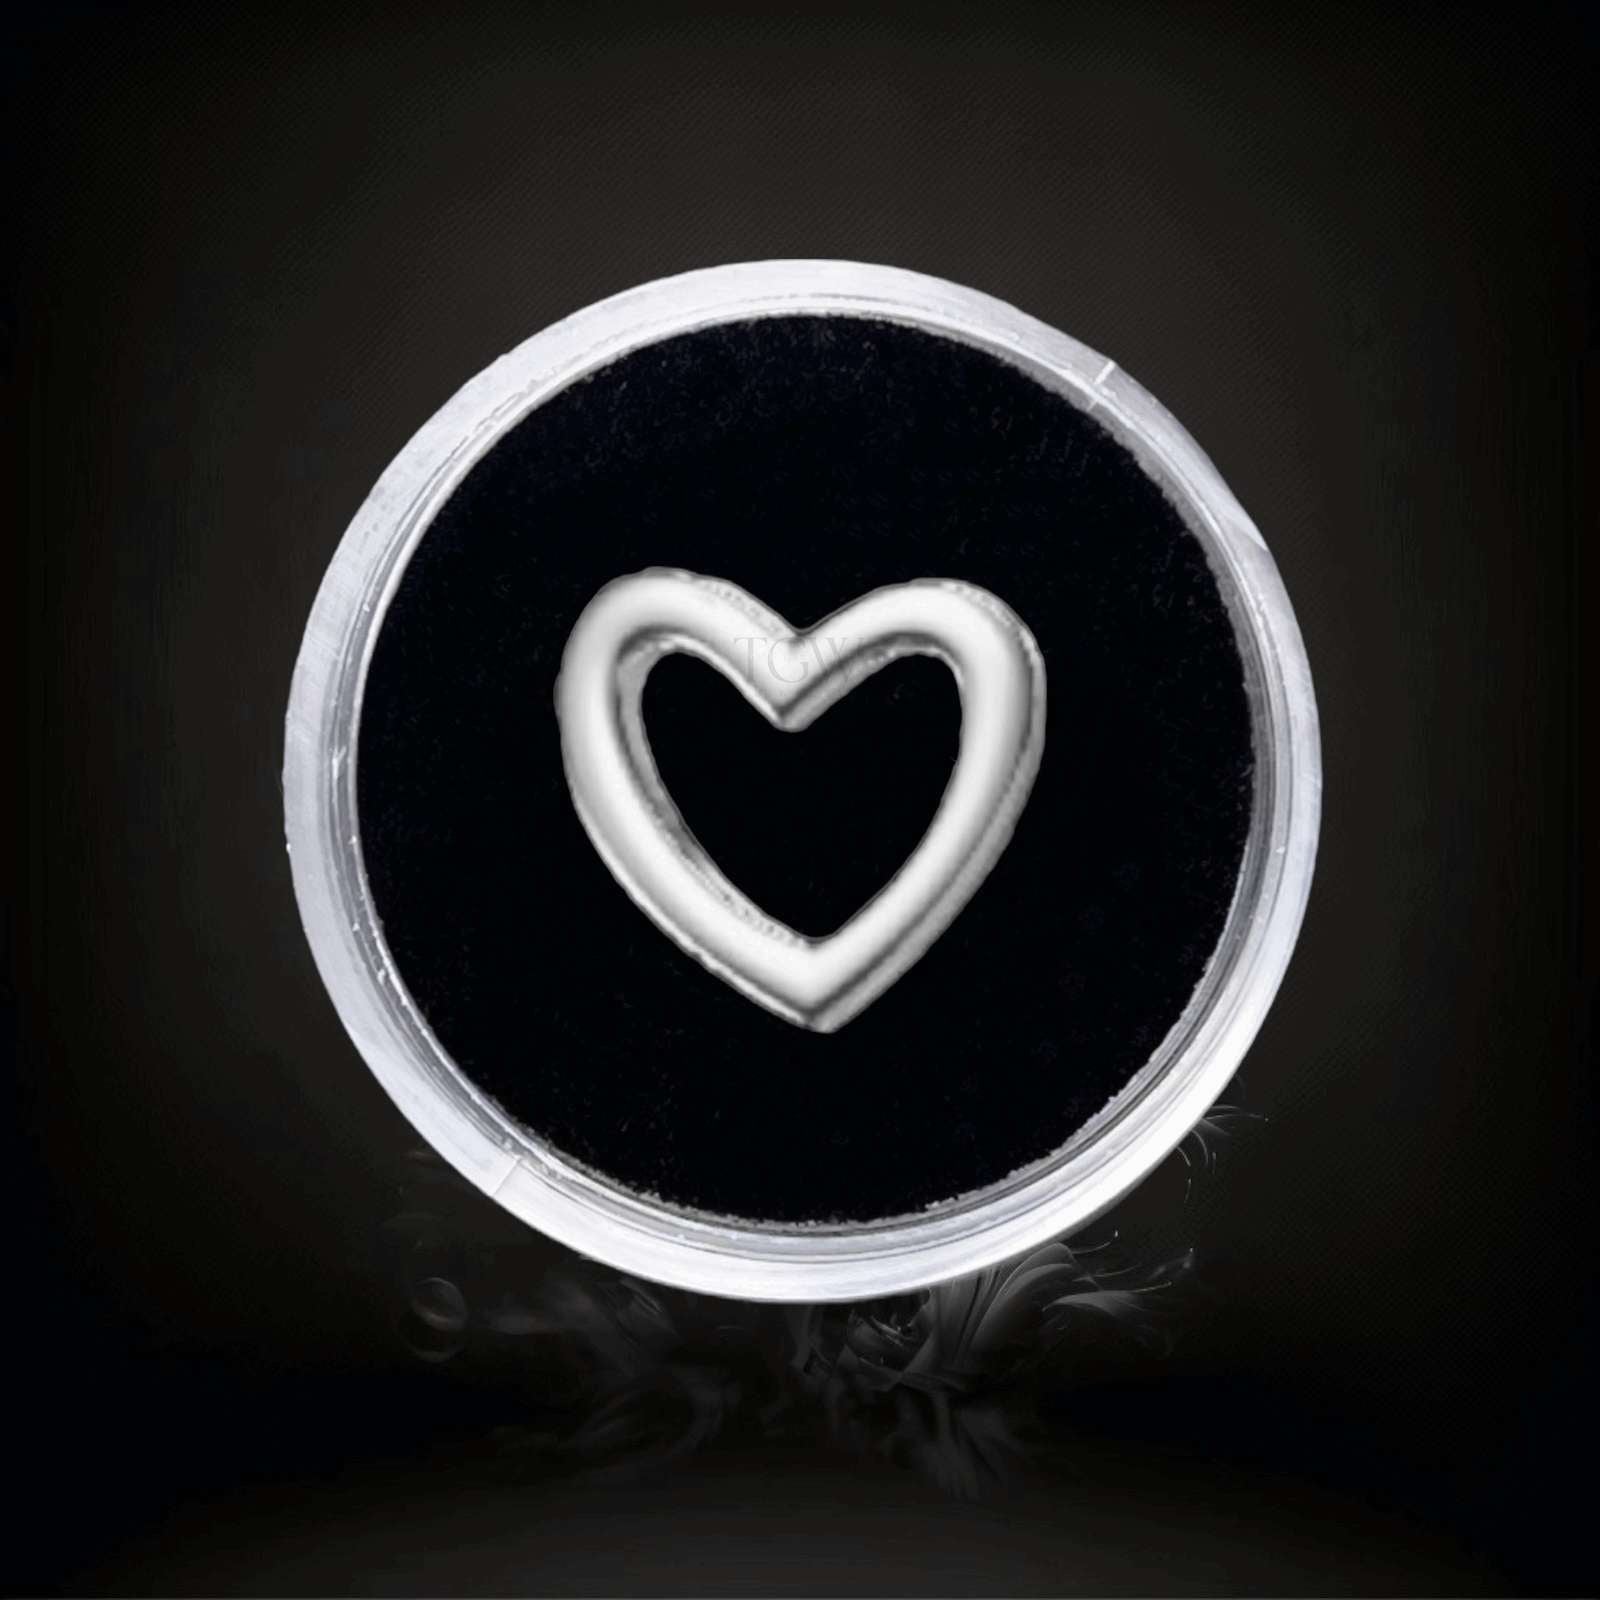 Design : Coeur en contour  Couleur :   Or blanc   Matériel : Or 18 carats   Dimensions : 4.6x5mm  Épaisseur ：0.5mm